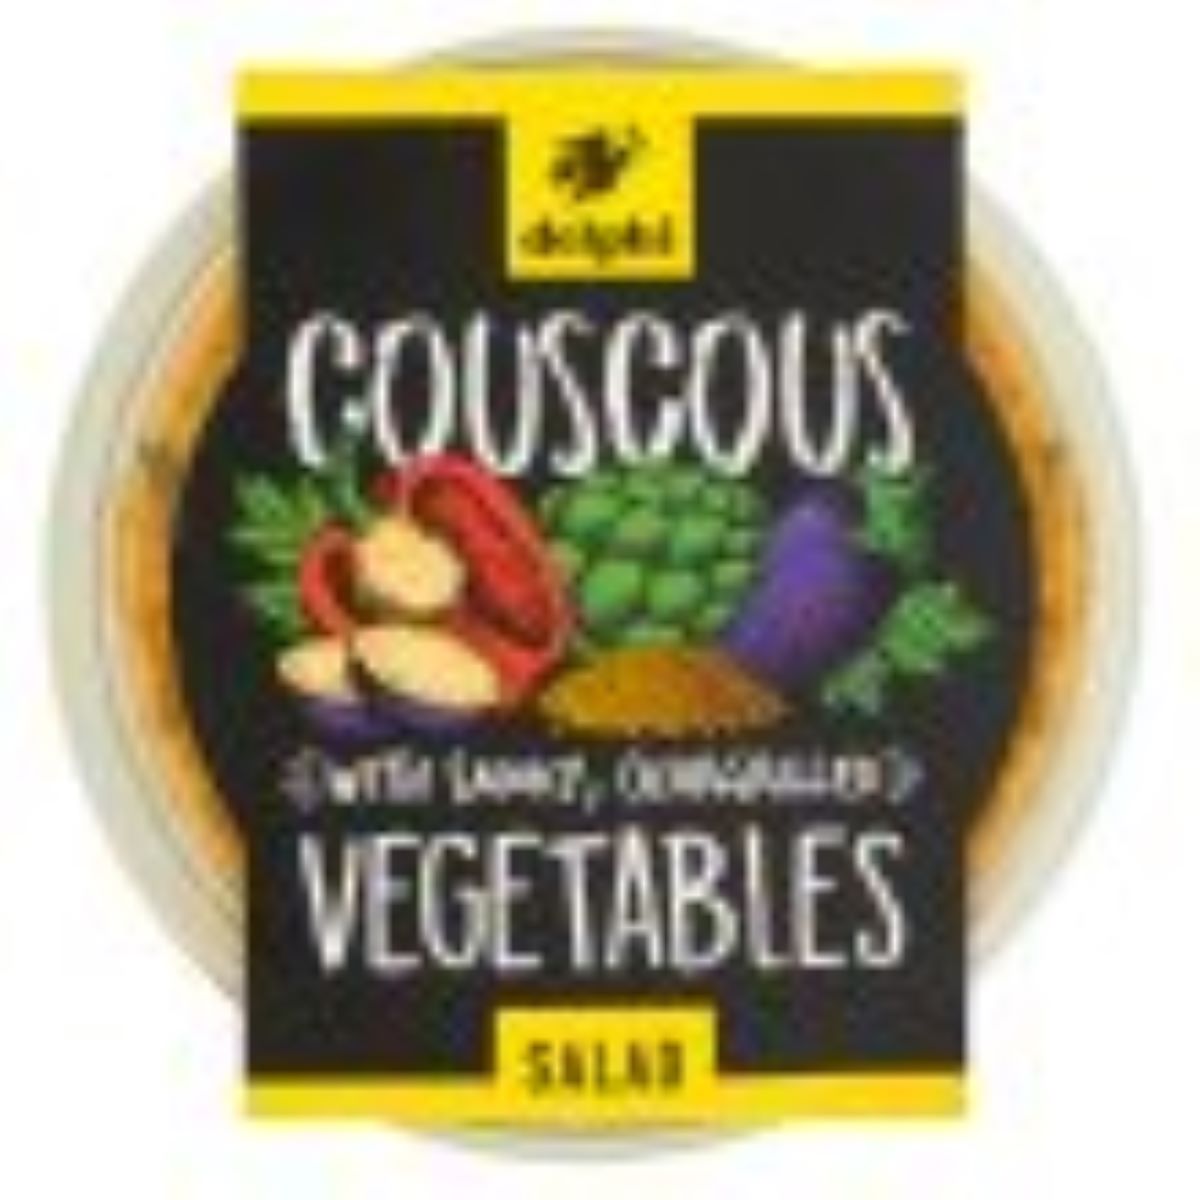 Delphi Couscous Vegetables 160g